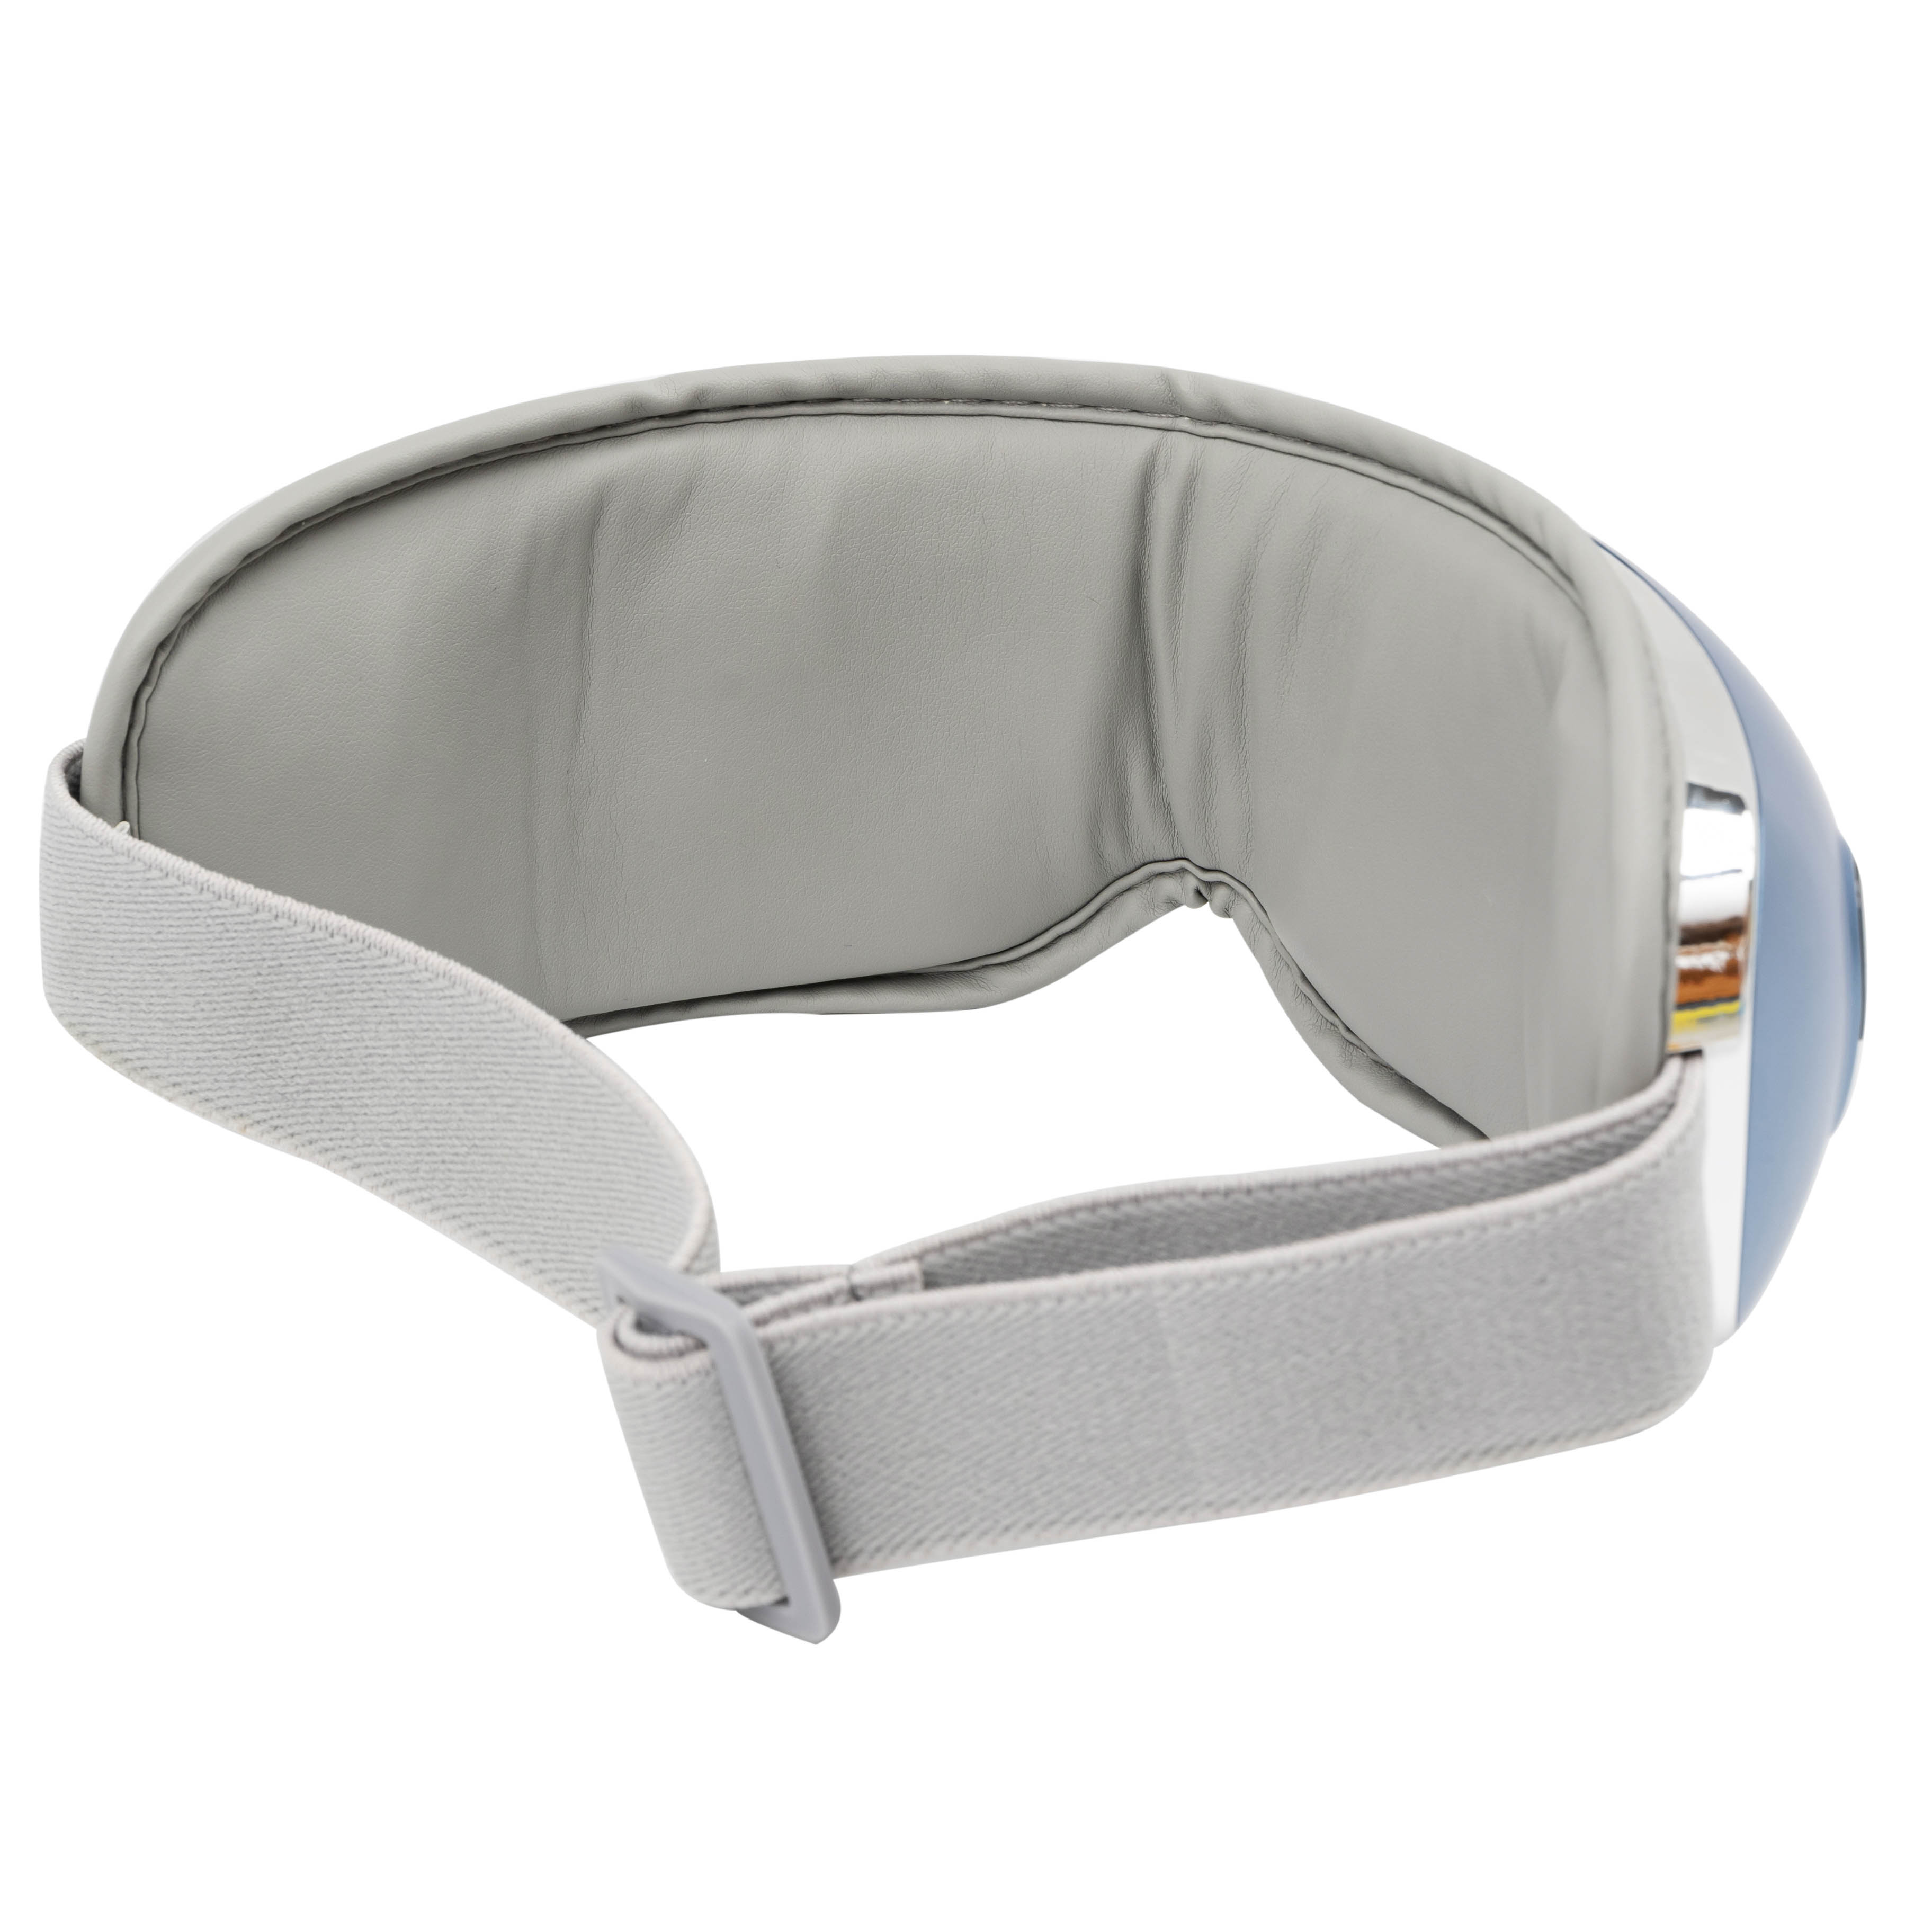 أفضل جهاز تدليك لحماية العين مع ضغط الهواء ومدلك العلاج بالضغط الساخن مع الموسيقى